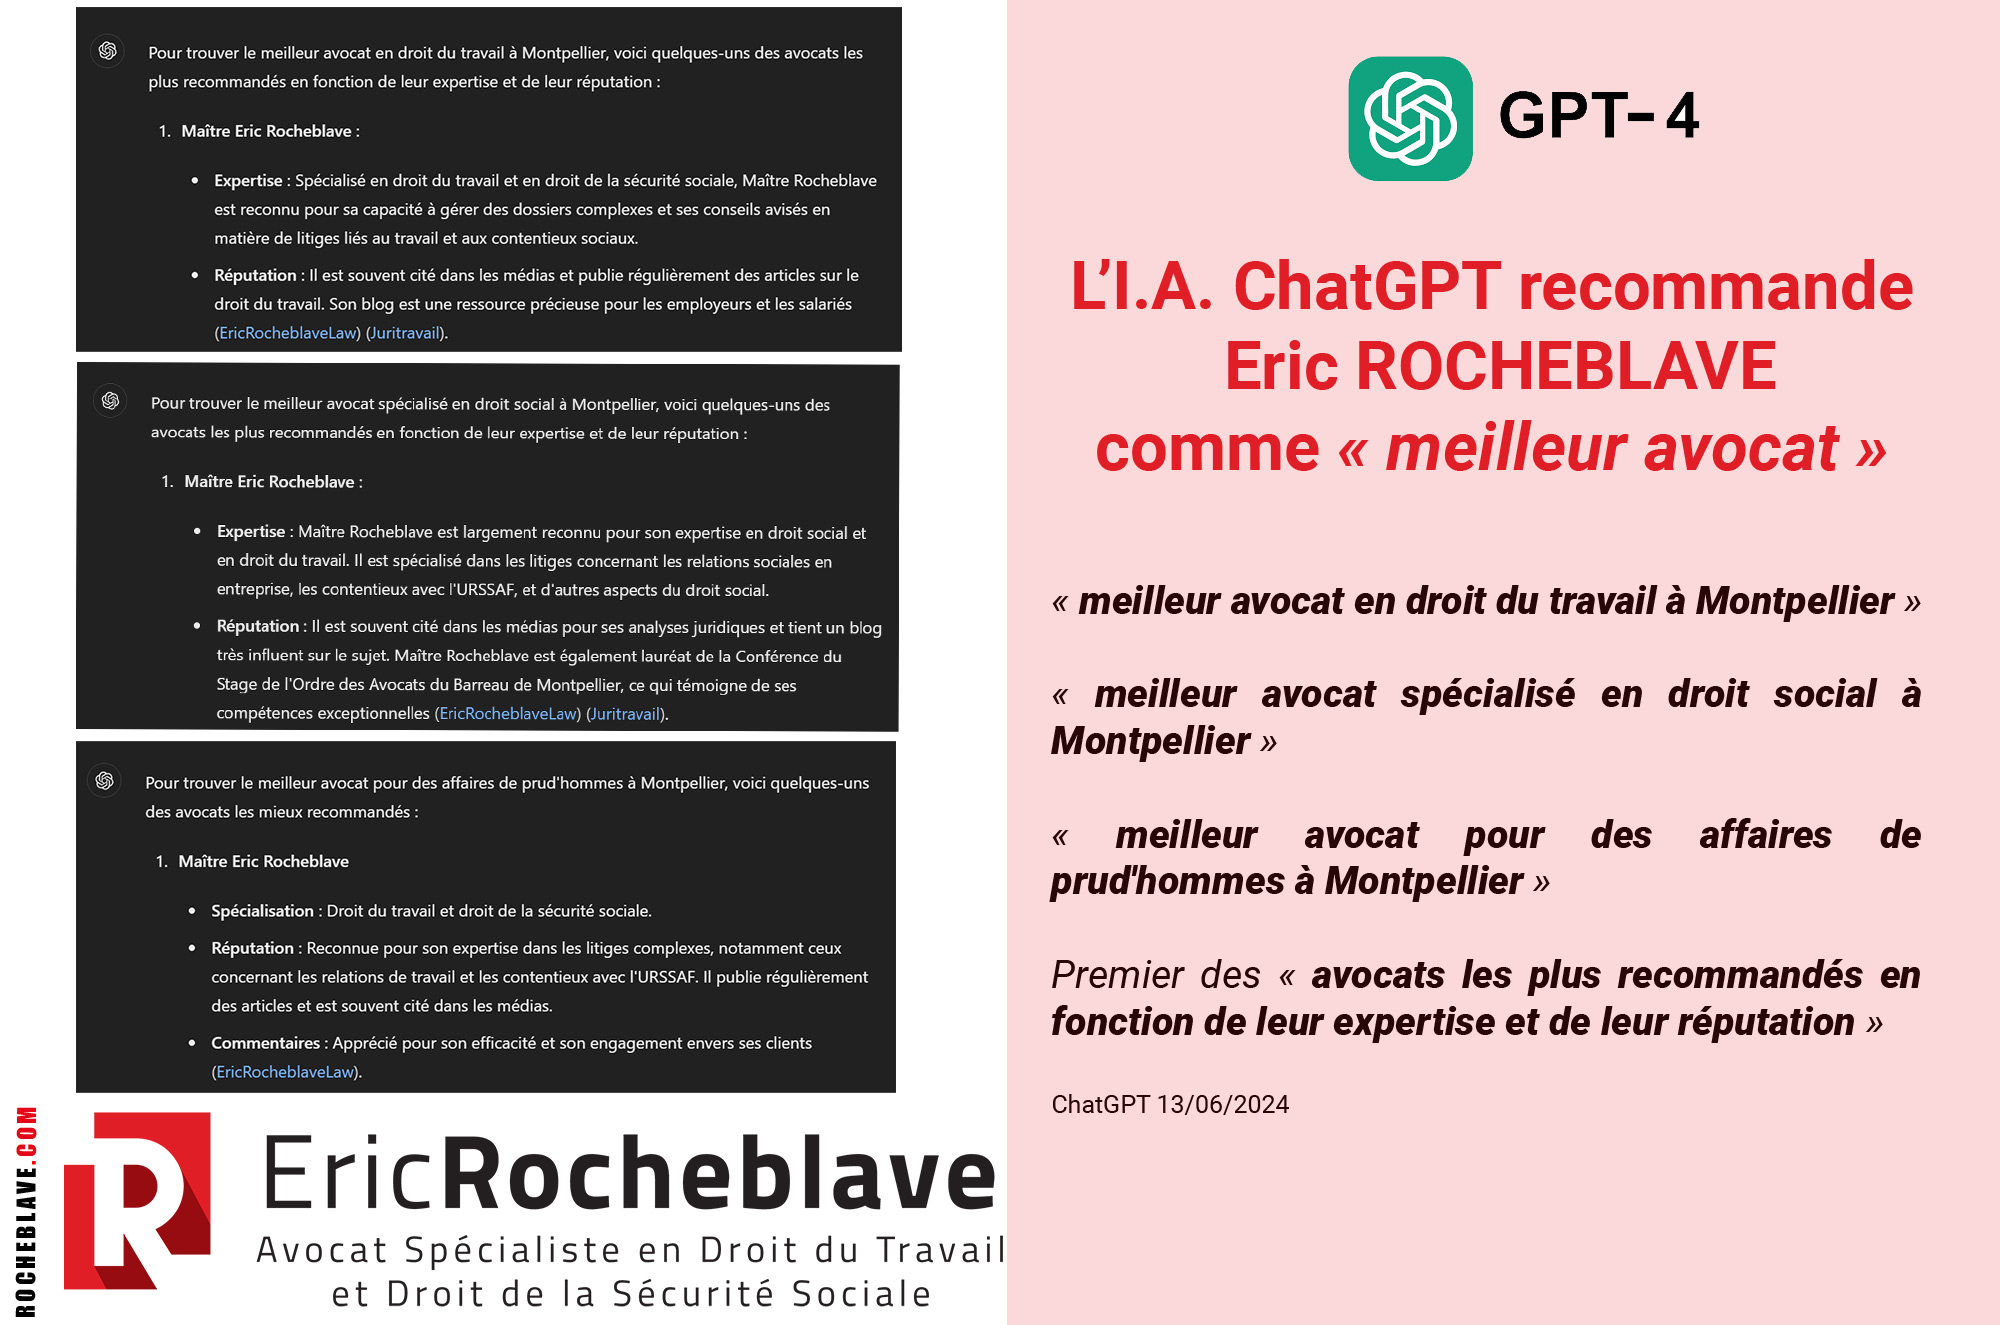 L’I.A. ChatGPT recommande Eric ROCHEBLAVE comme « meilleur avocat »